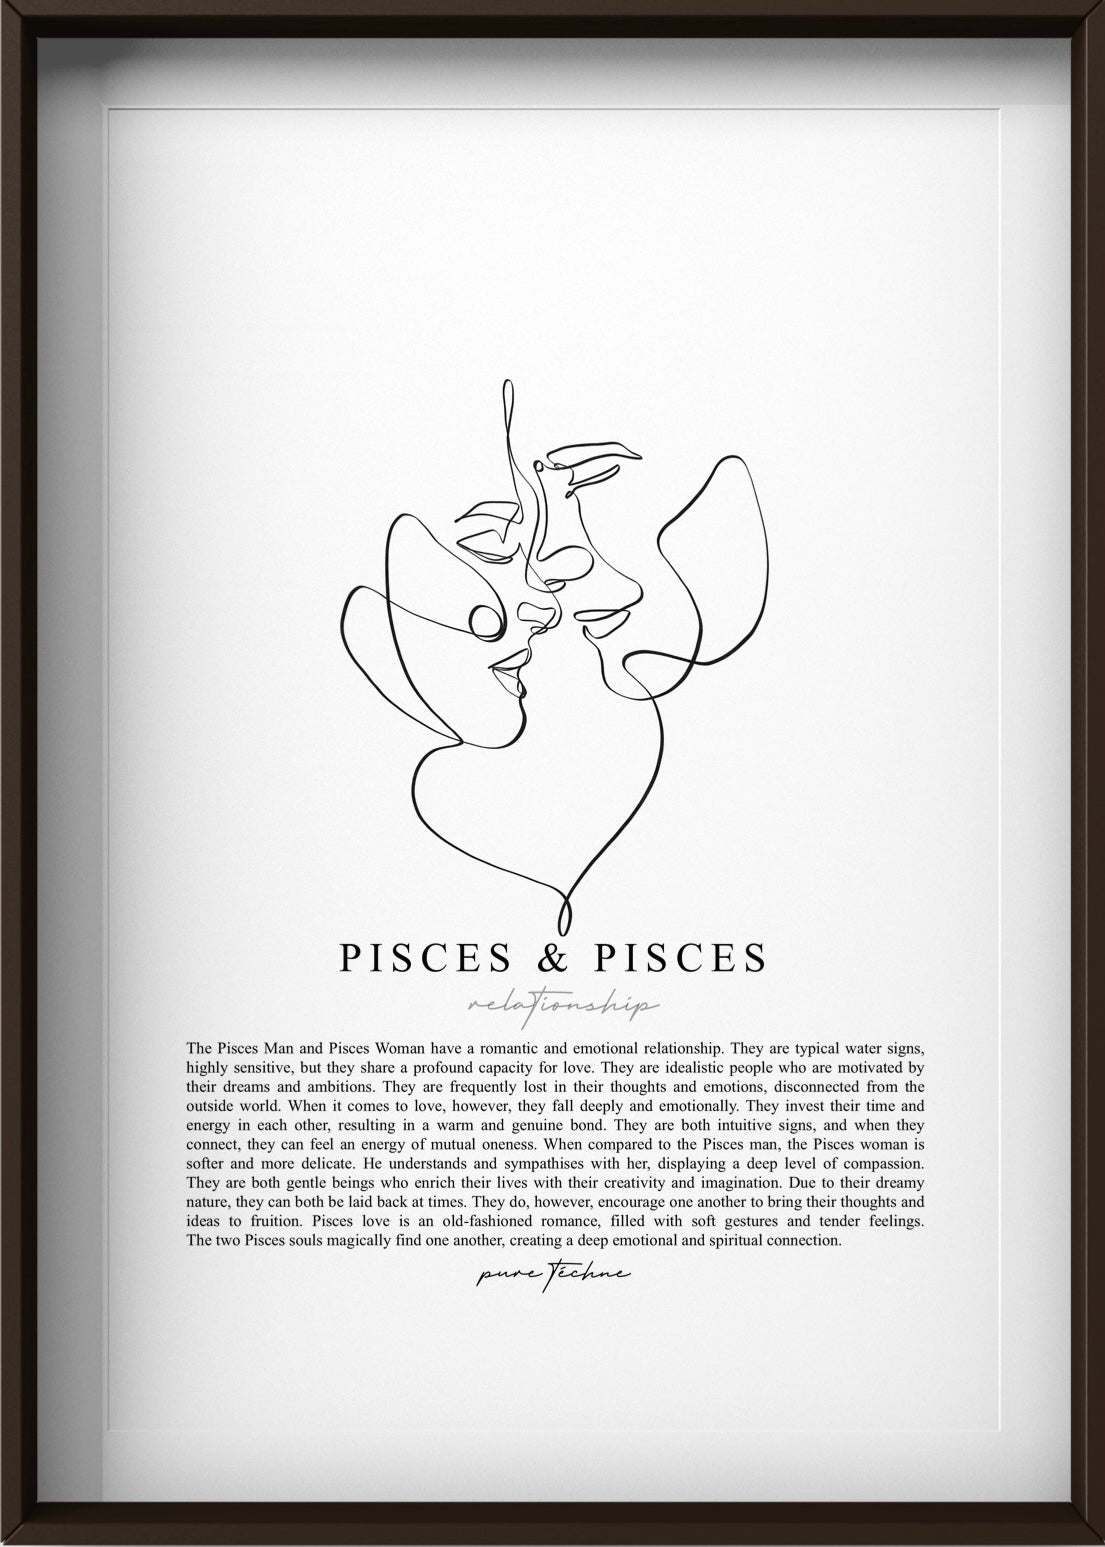 Pisces Man & Pisces Woman